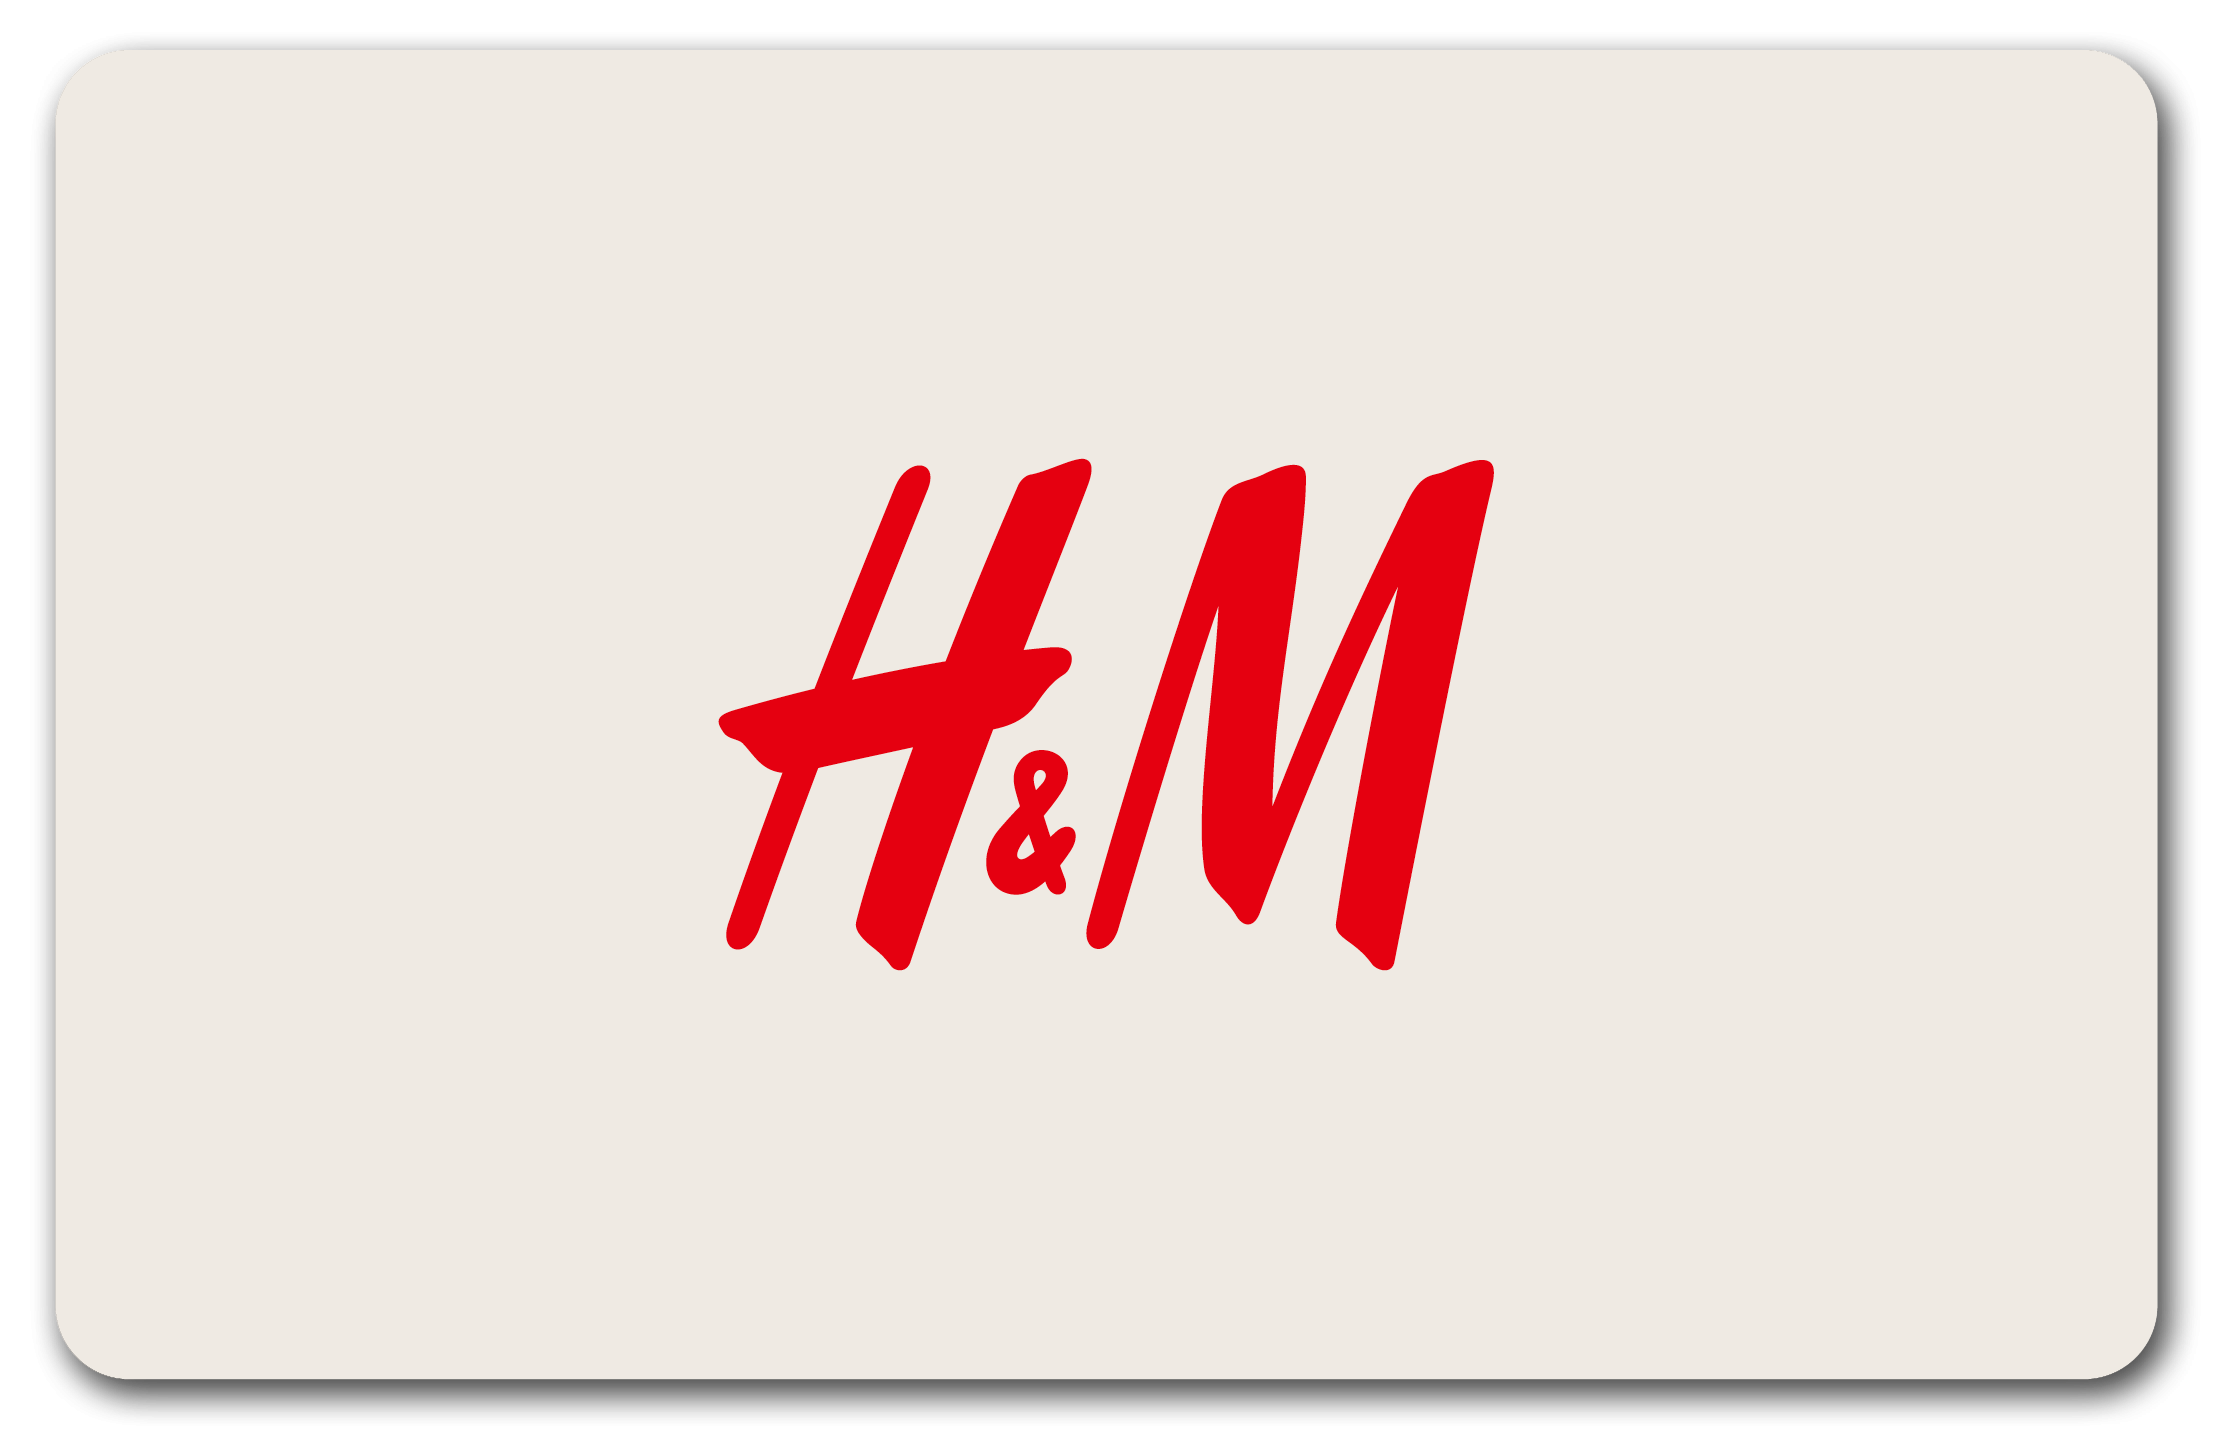 H&M Collégien